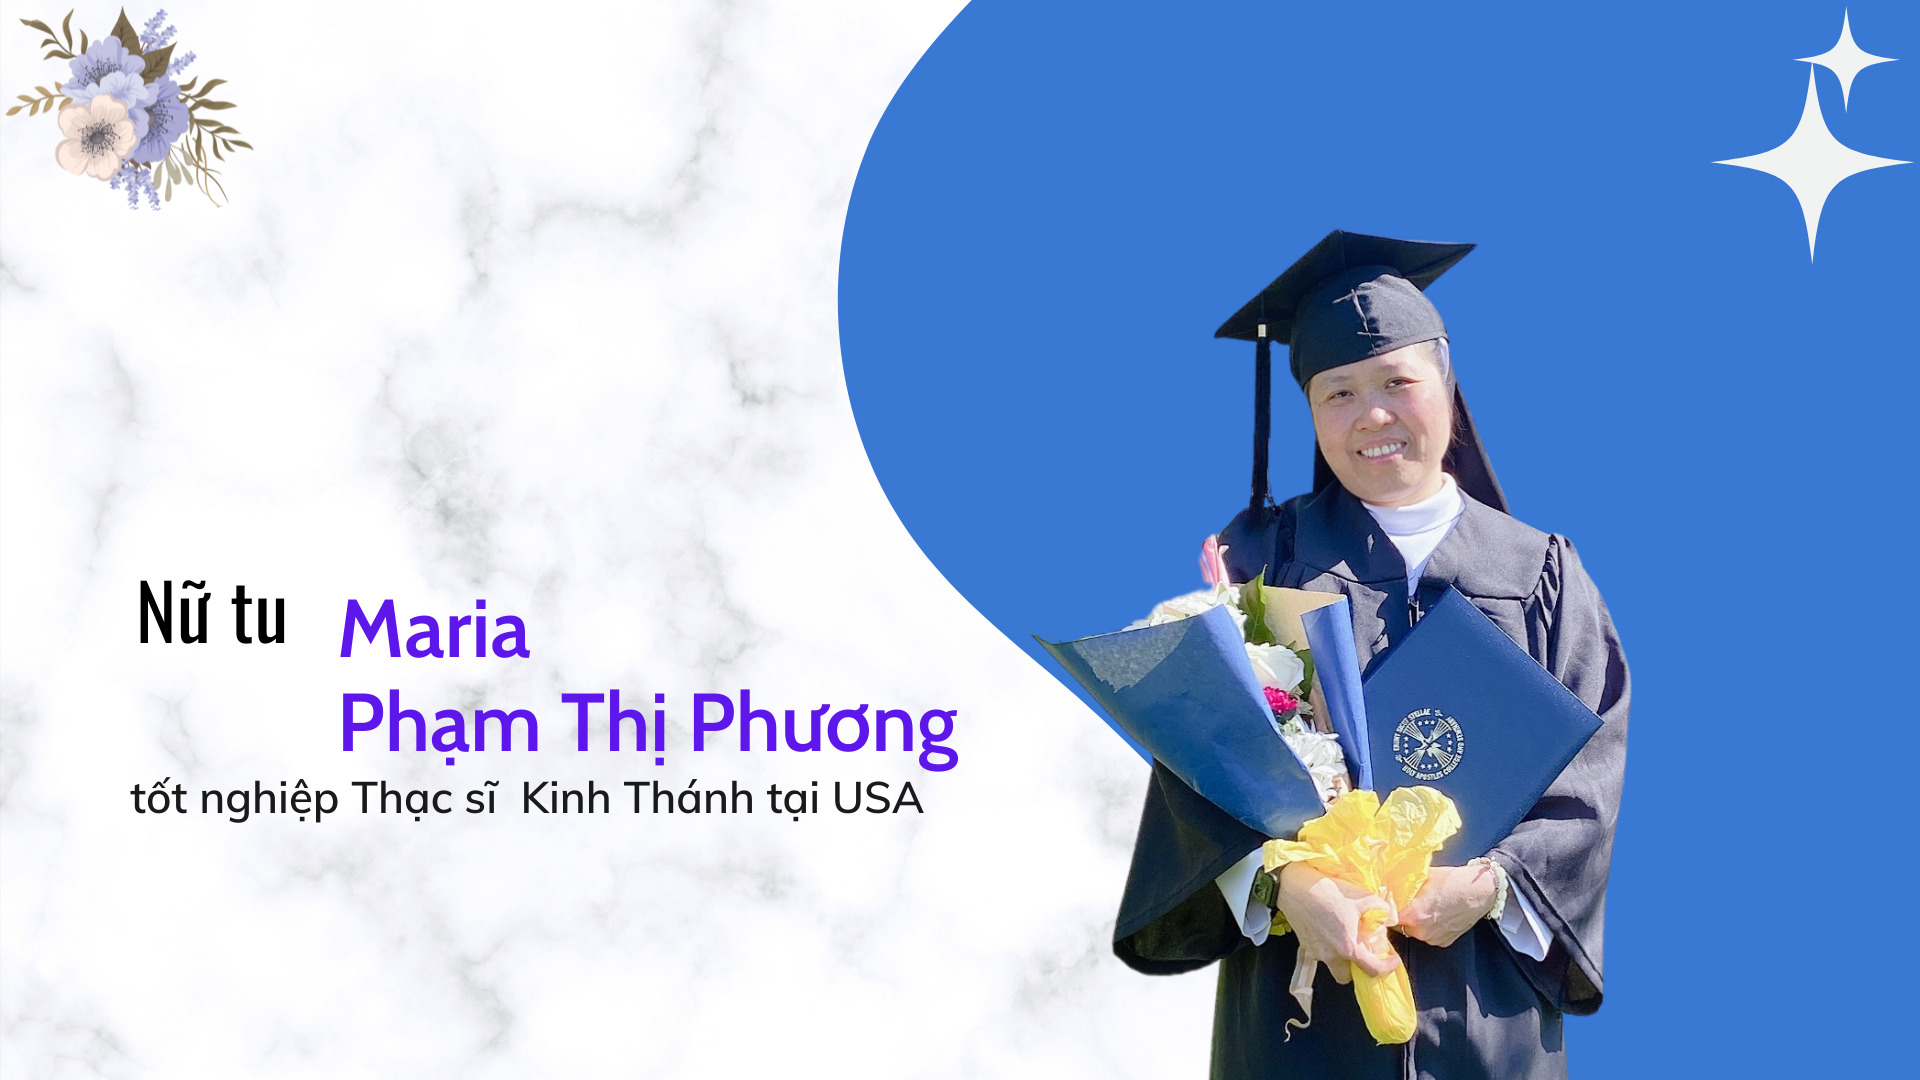 Nữ tu Maria Phạm Thị Phương tốt nghiệp Thạc sĩ  Kinh Thánh tại USA